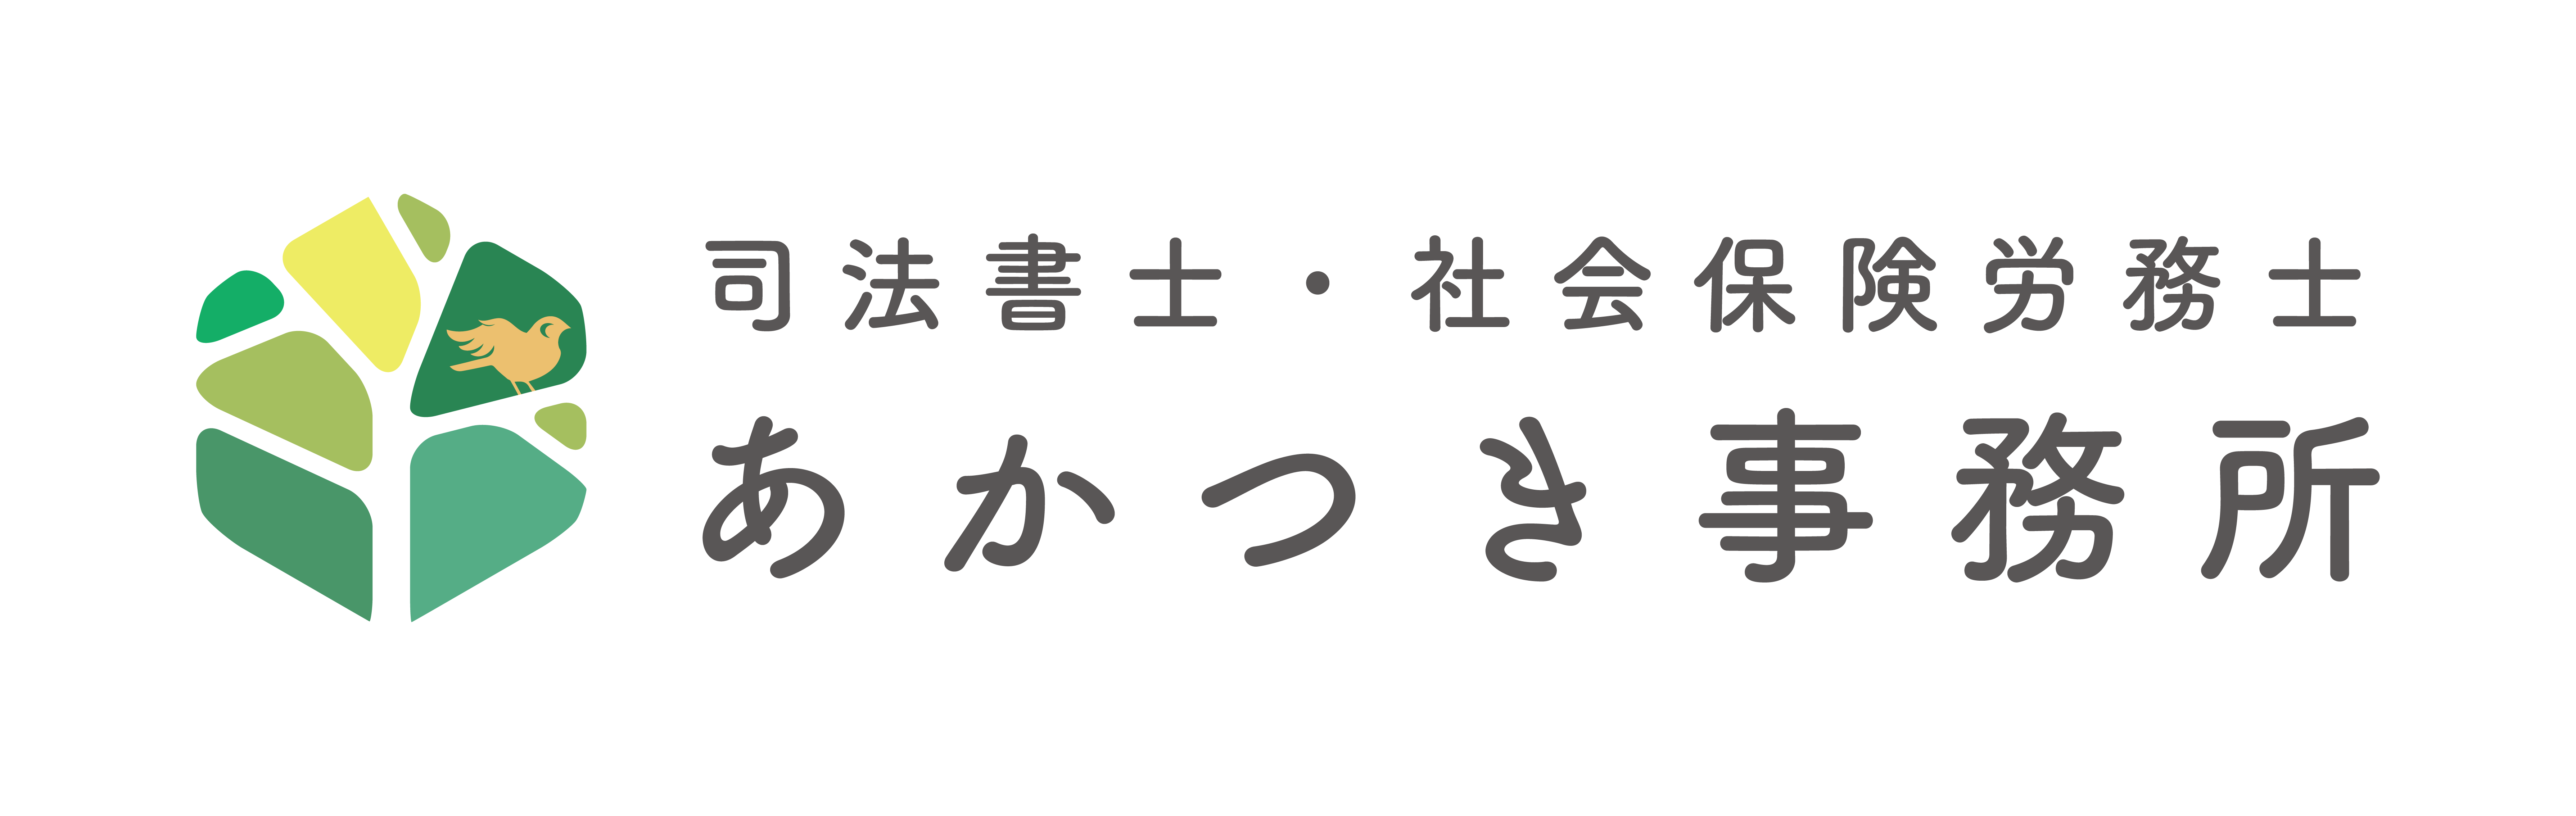 あかつき事務所様2-logo (1)